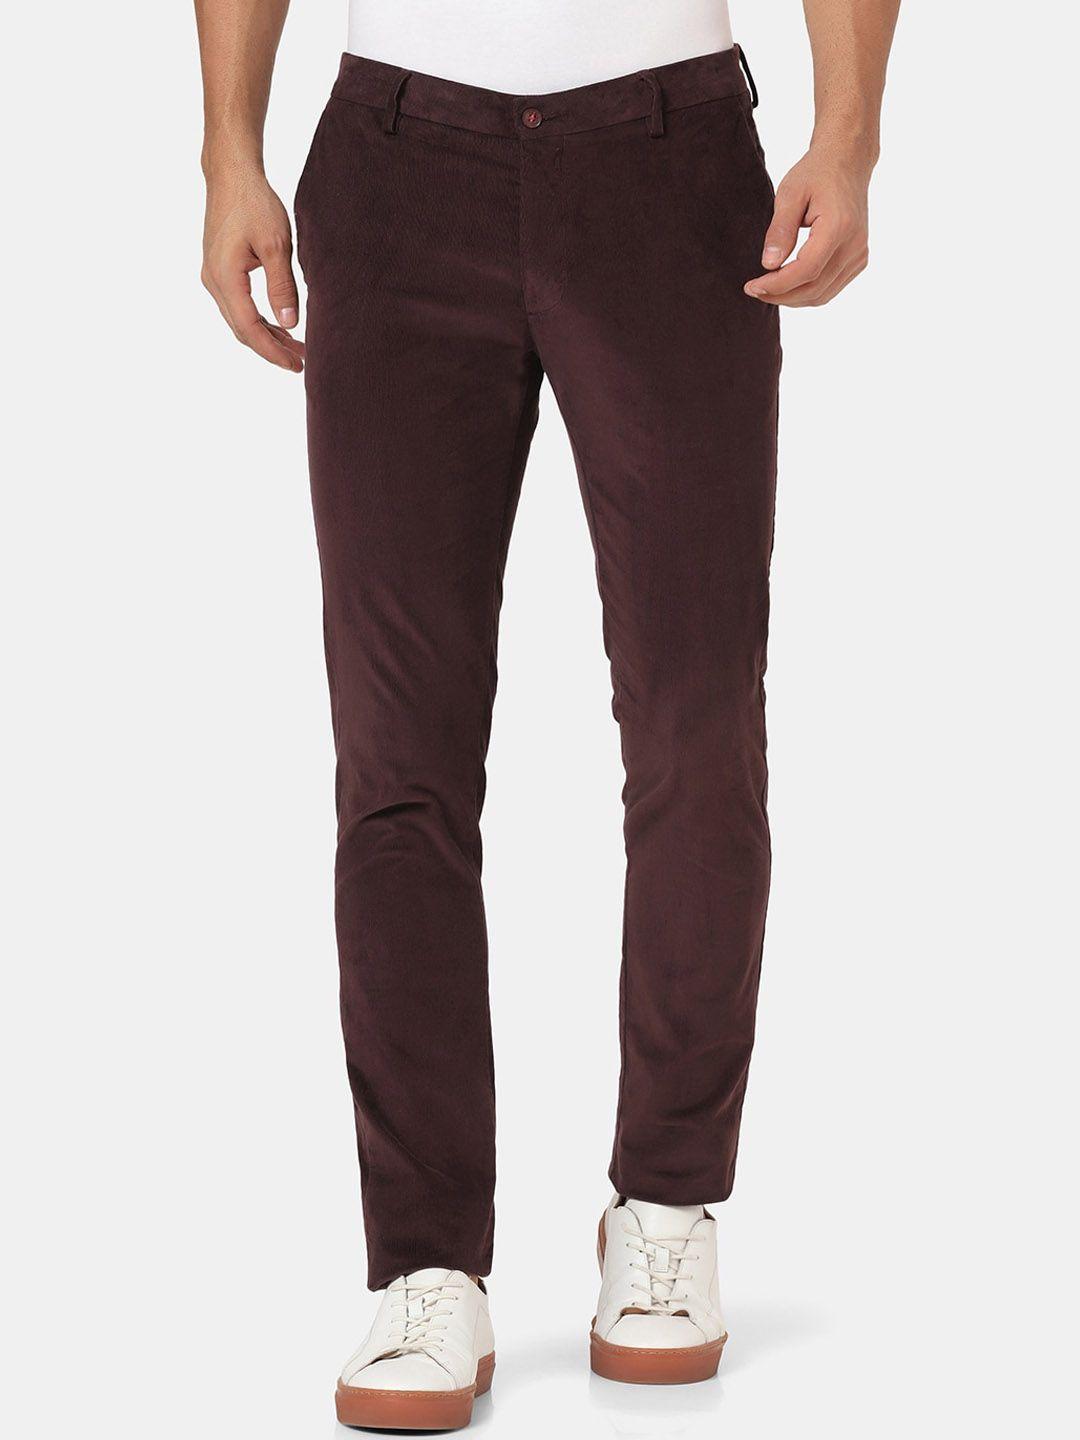 blackberrys men maroon slim fit low-rise trousers